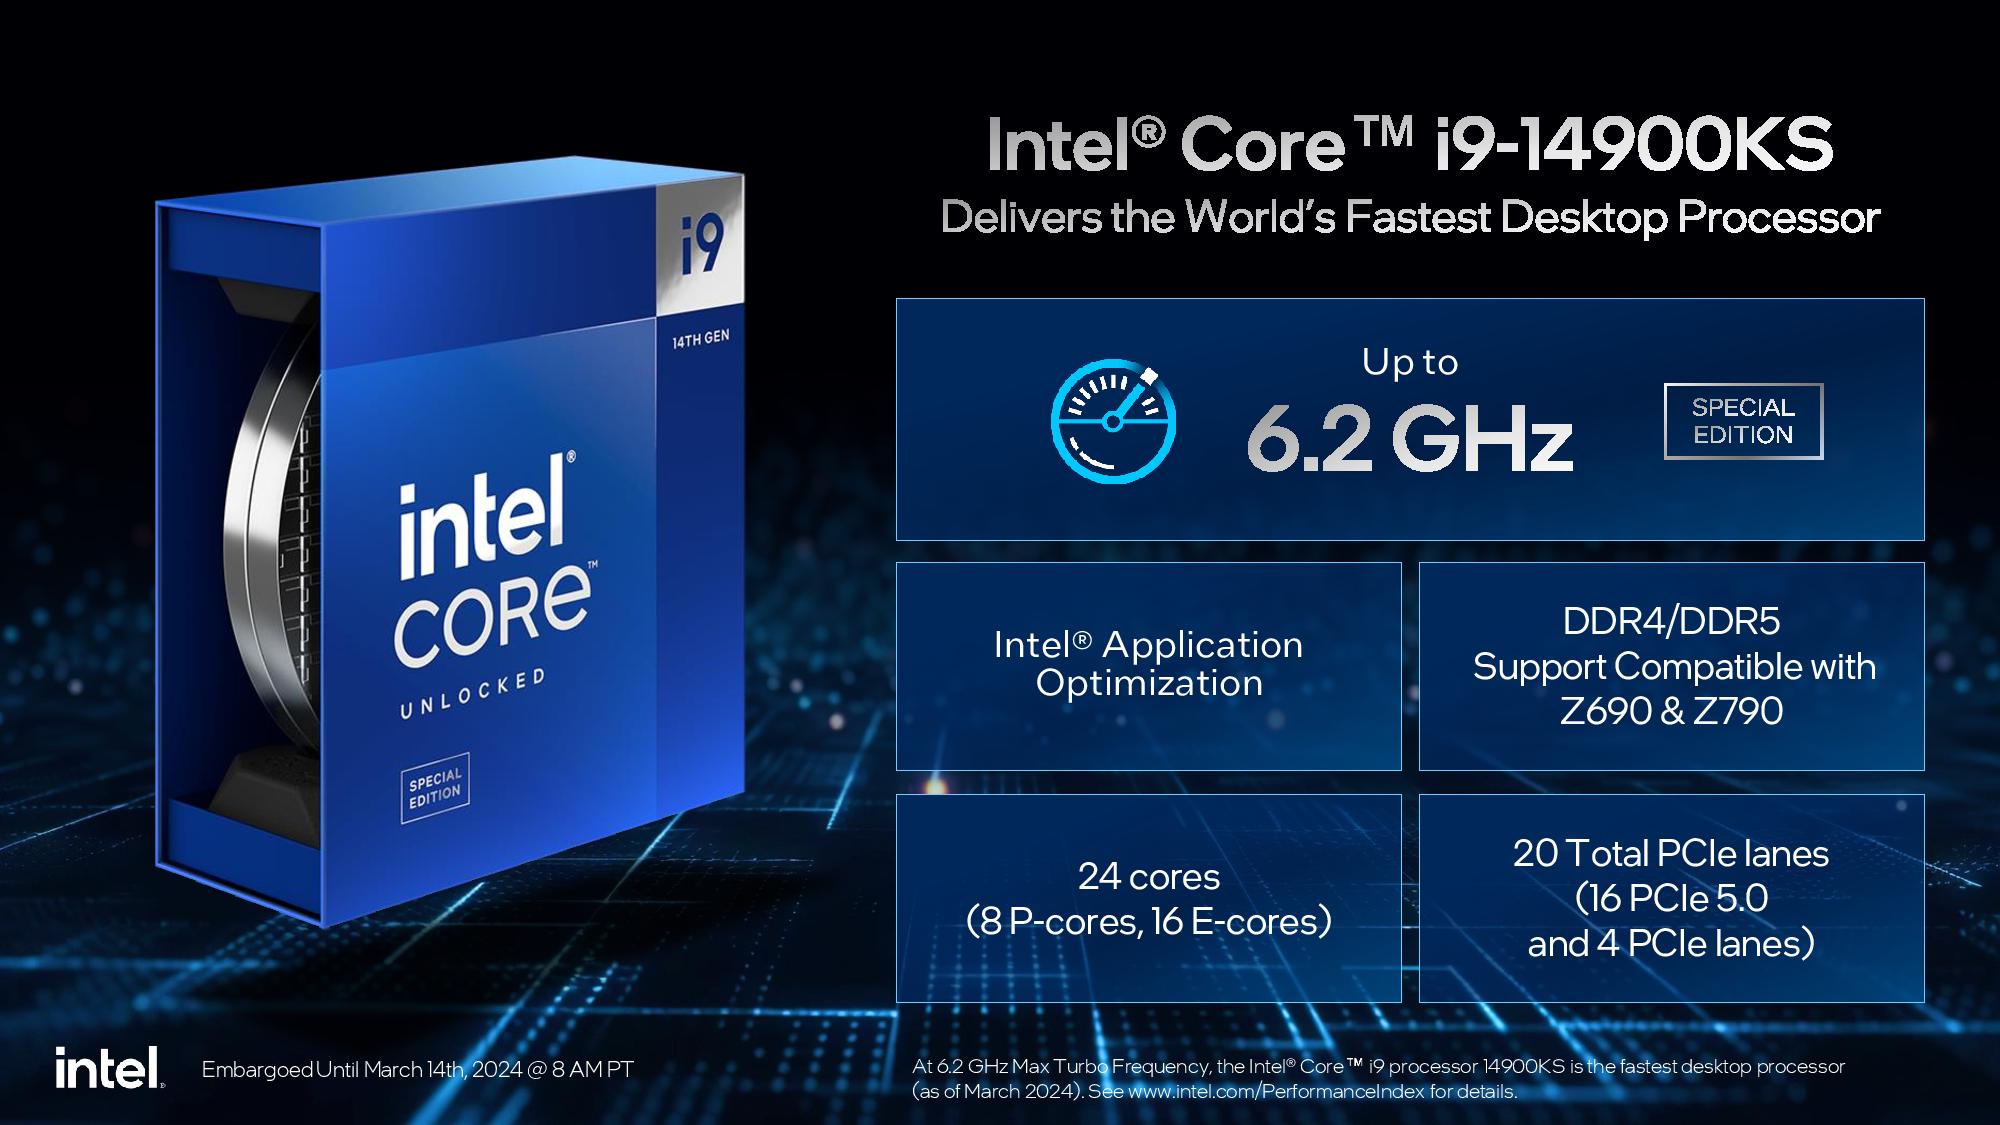 La corsa ai megahertz continua: Intel Core i9-14900KS raggiunge i 6,2GHz di potenza subito dopo l'uscita dalla scatola